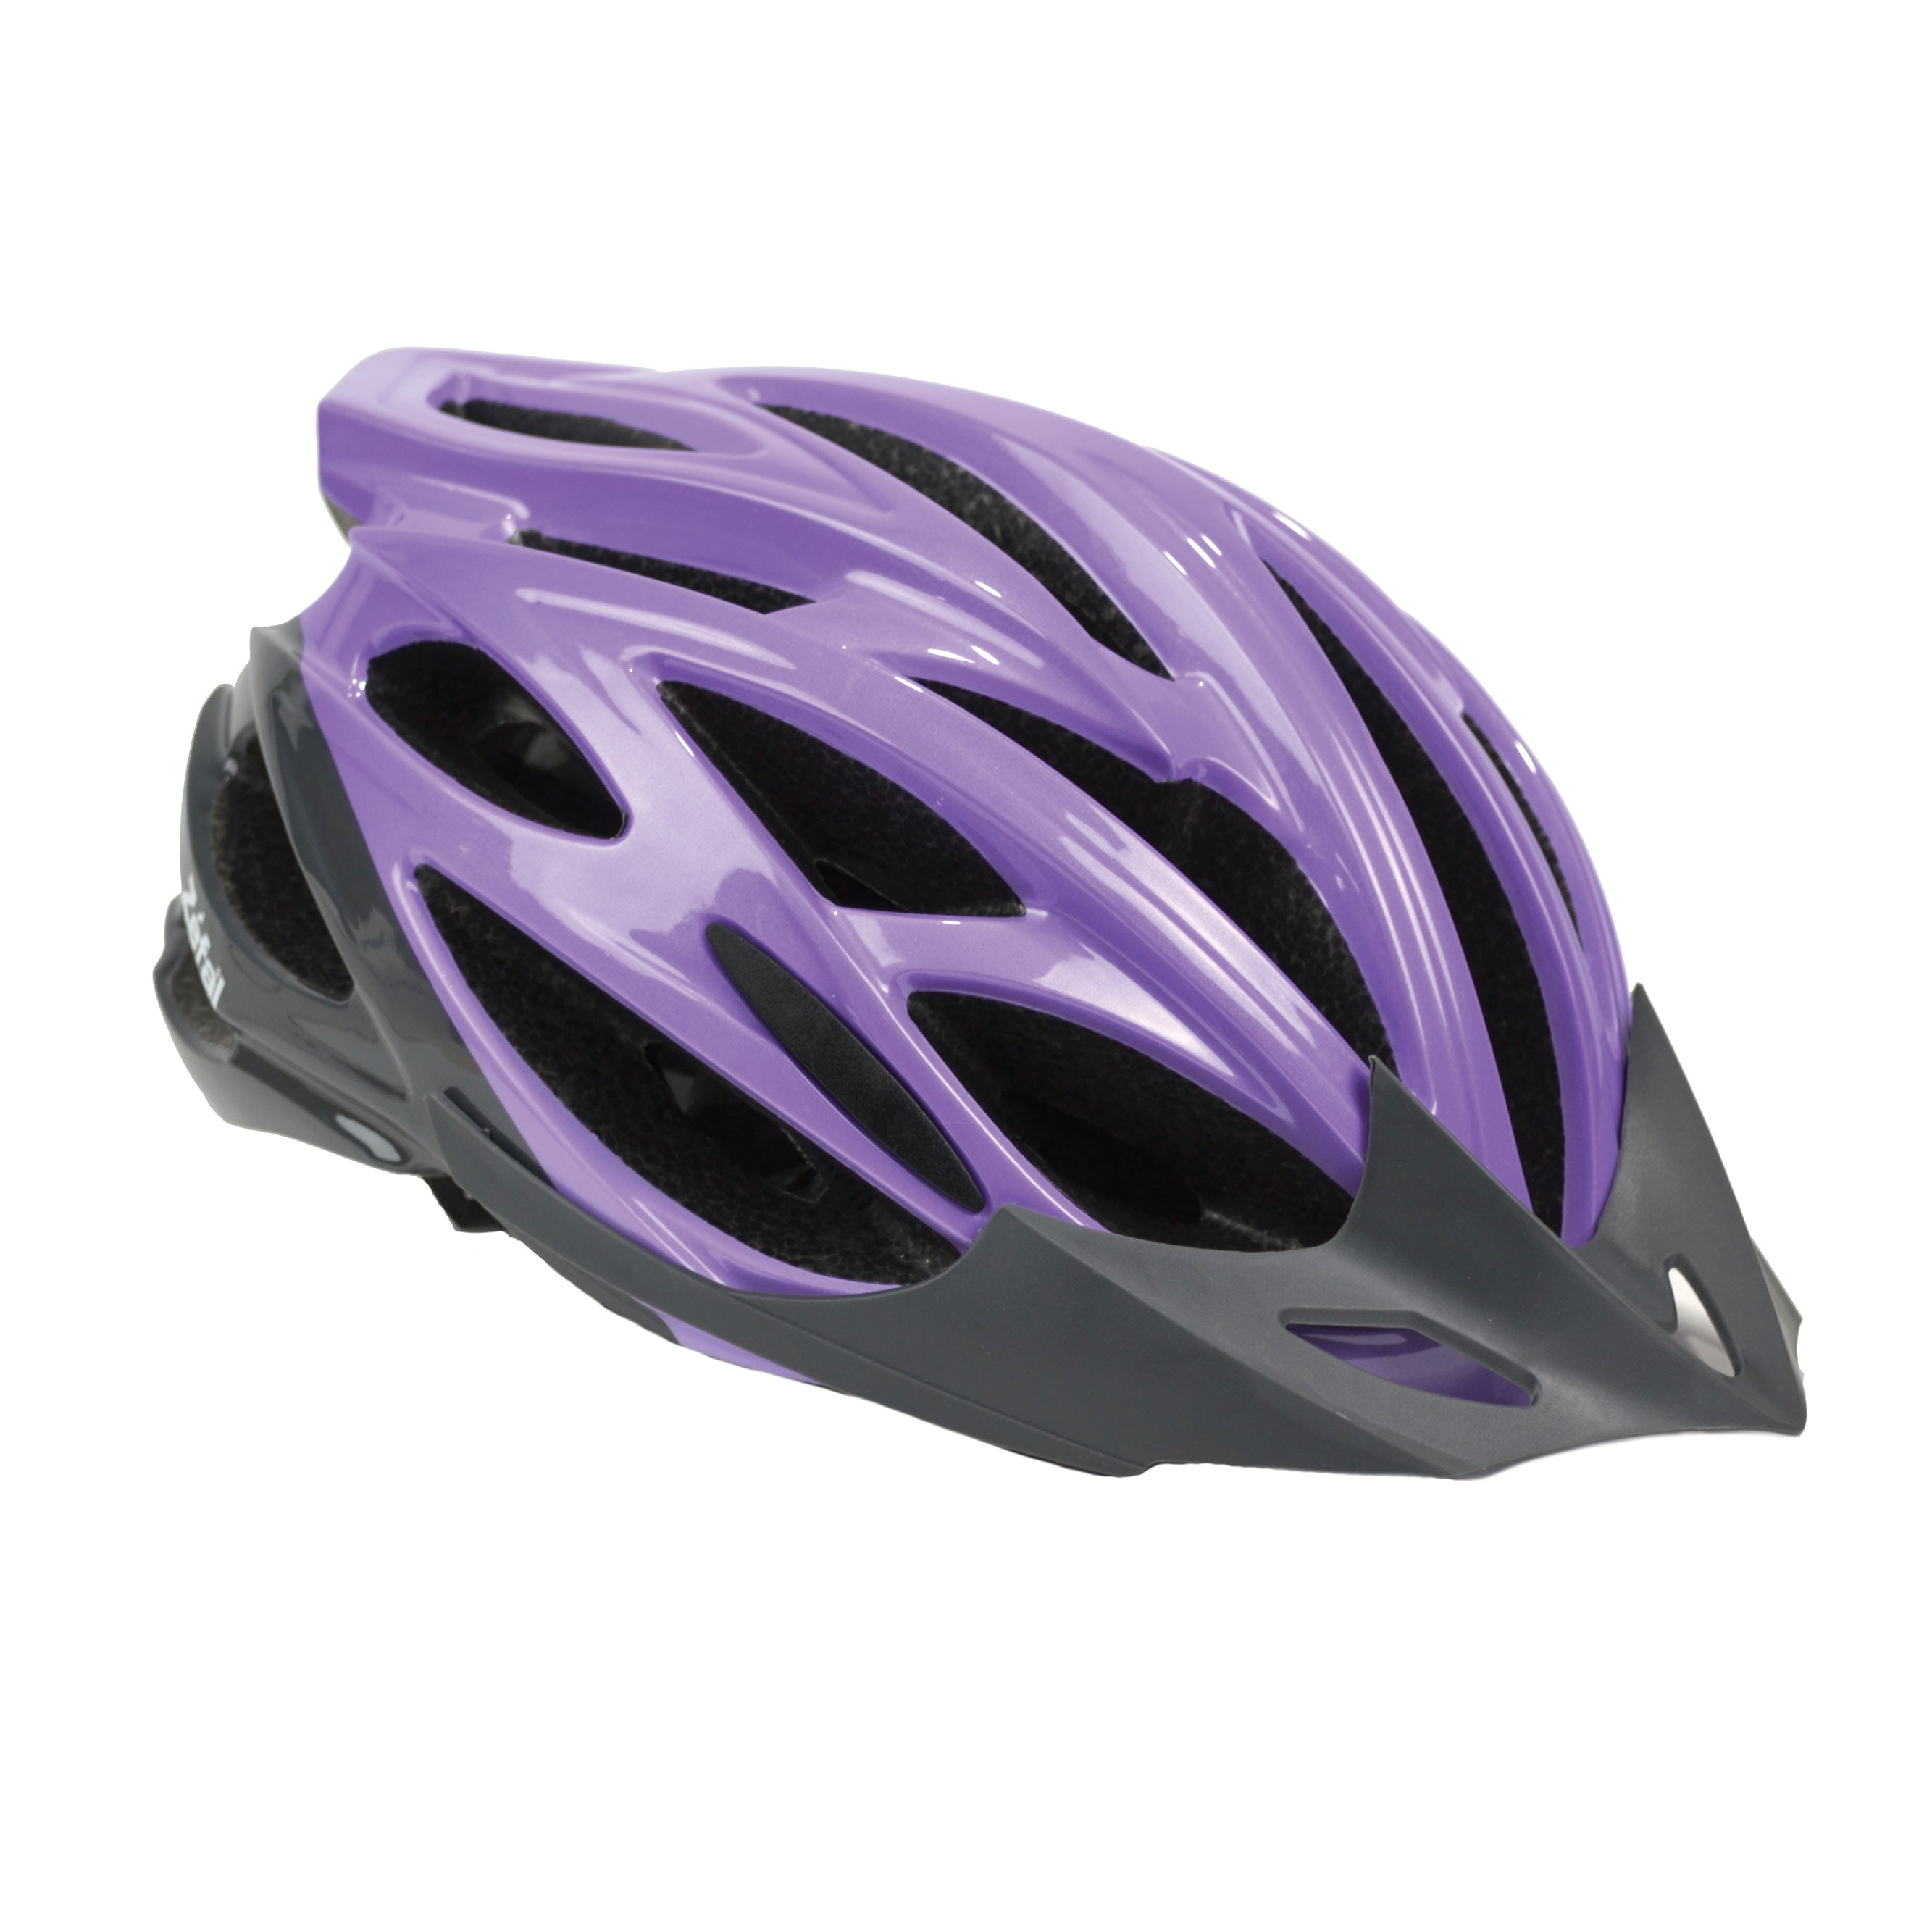 Details about   Pro24 Zefal Helmet Ages 14 NEW Vent Airflow Pink & Gray Color Super Light 